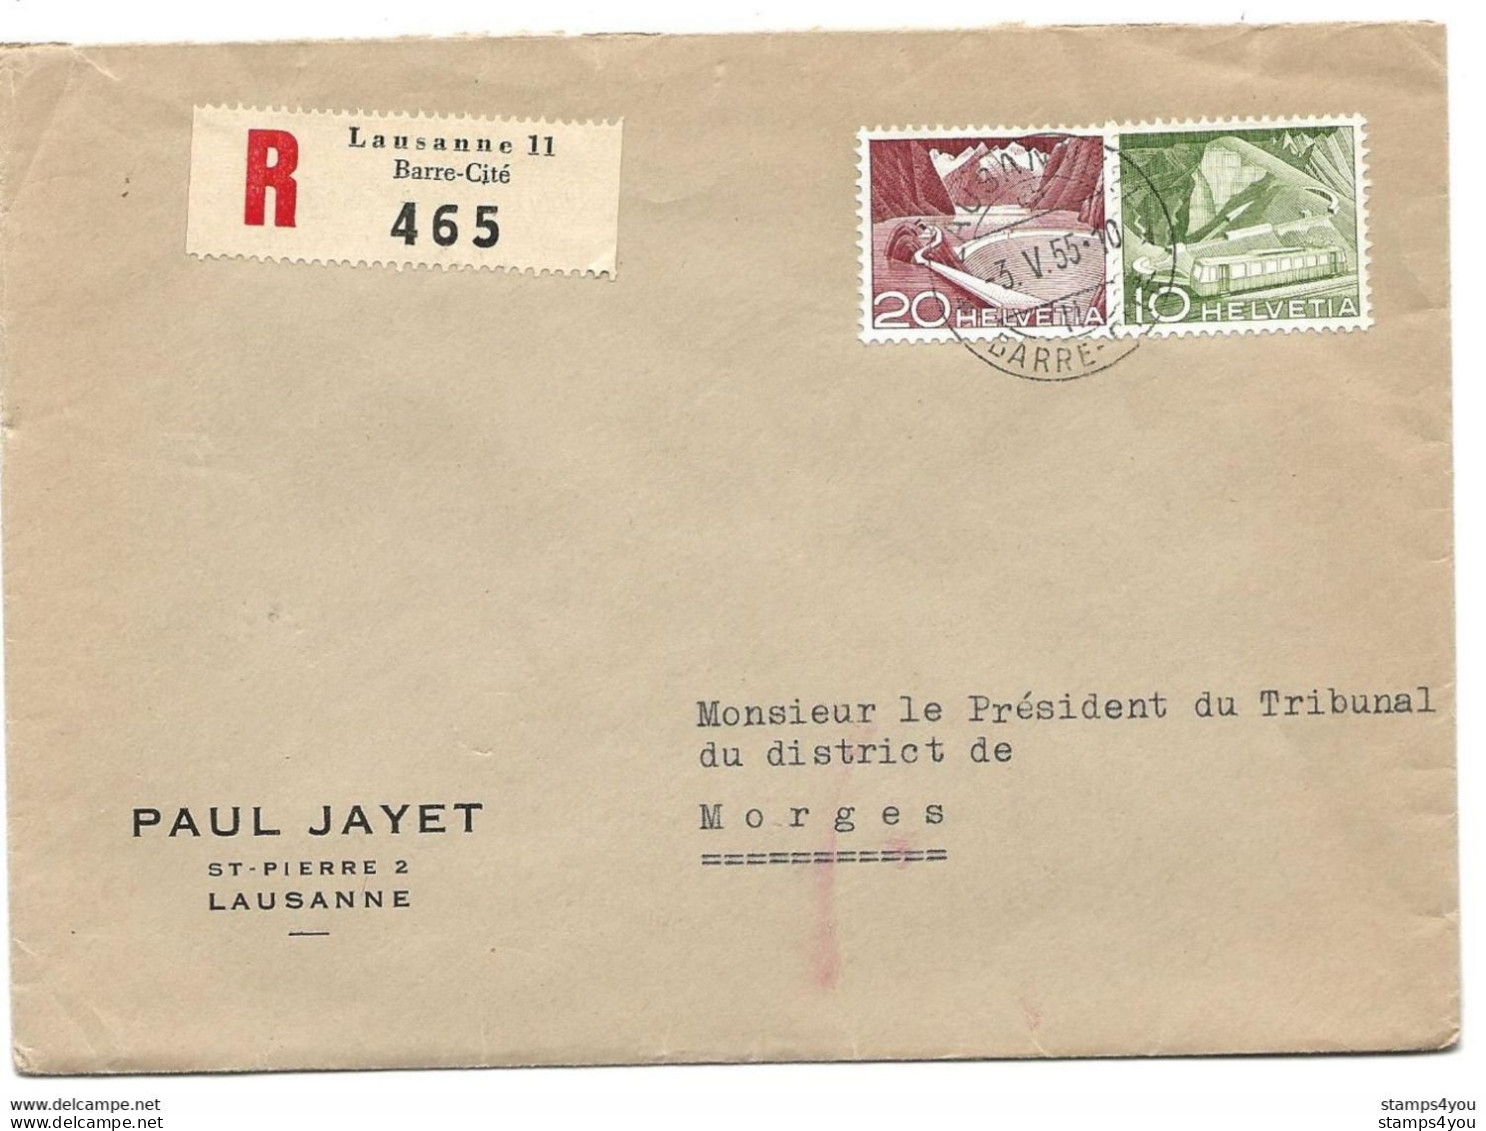 115 - 22 - Enveloppe Recommandée Envoyée De Lausanne  Gare-Cité 1955 - Lettres & Documents